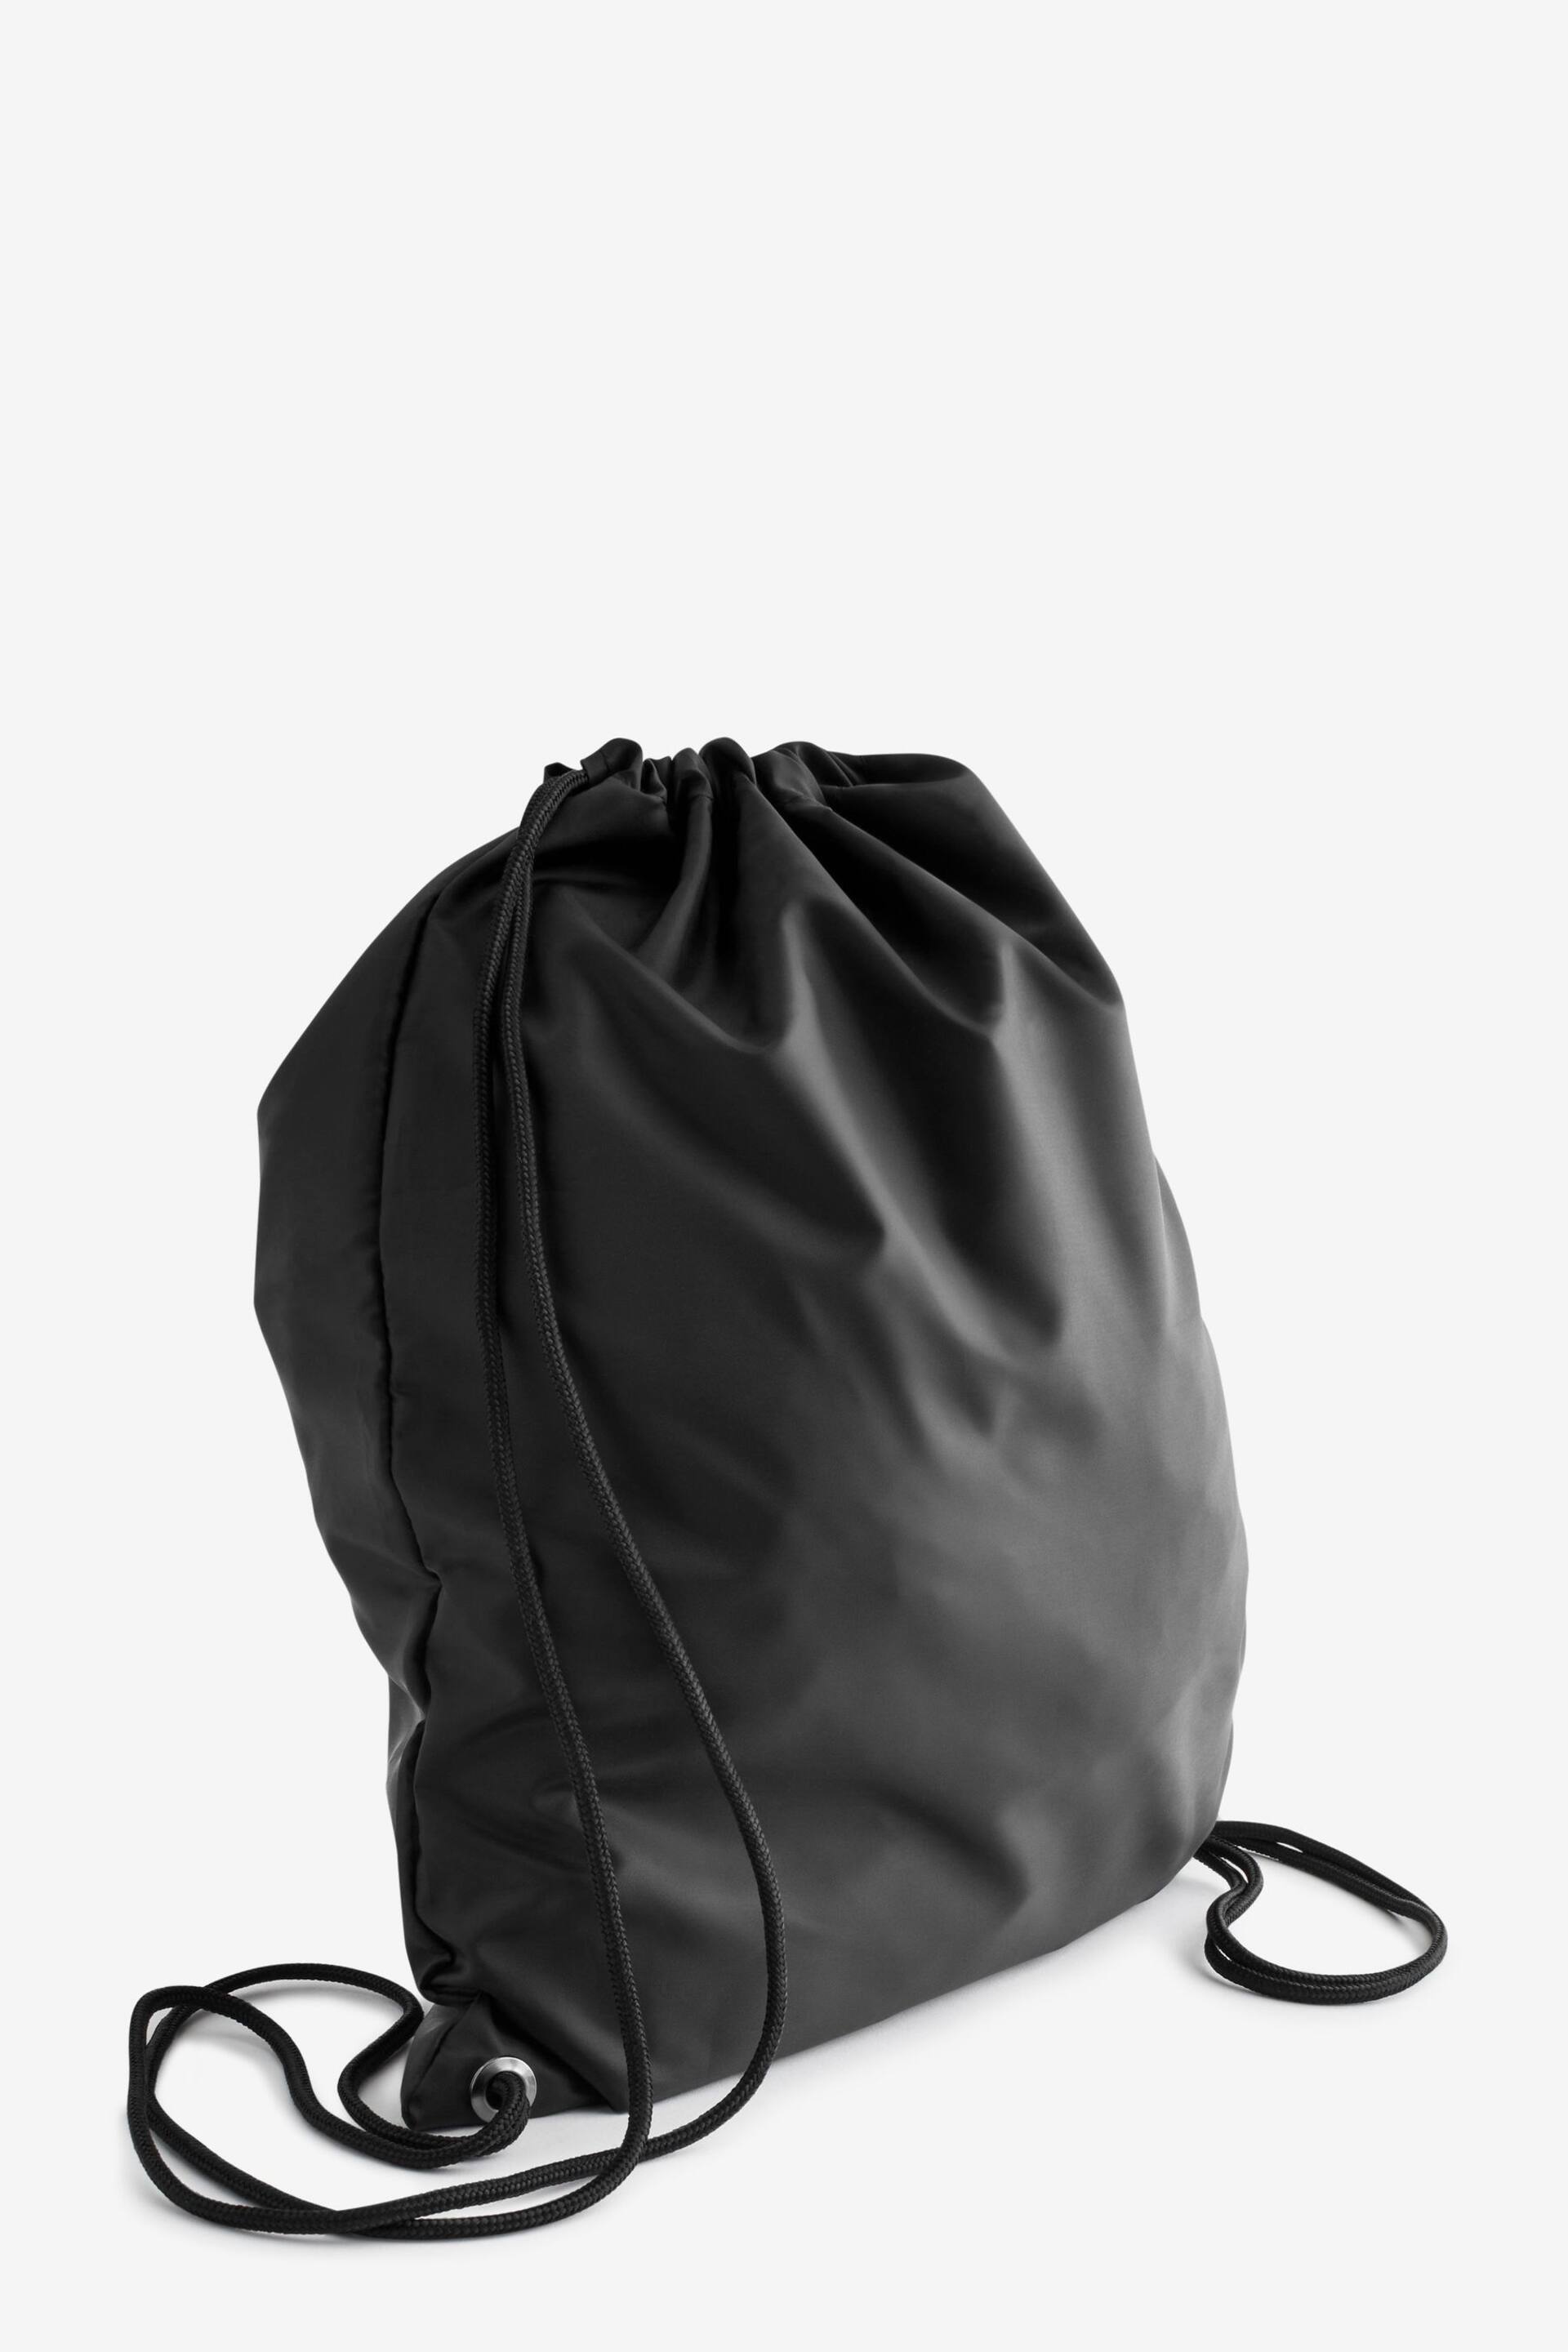 Black Drawstring Gym Bag - Image 3 of 4